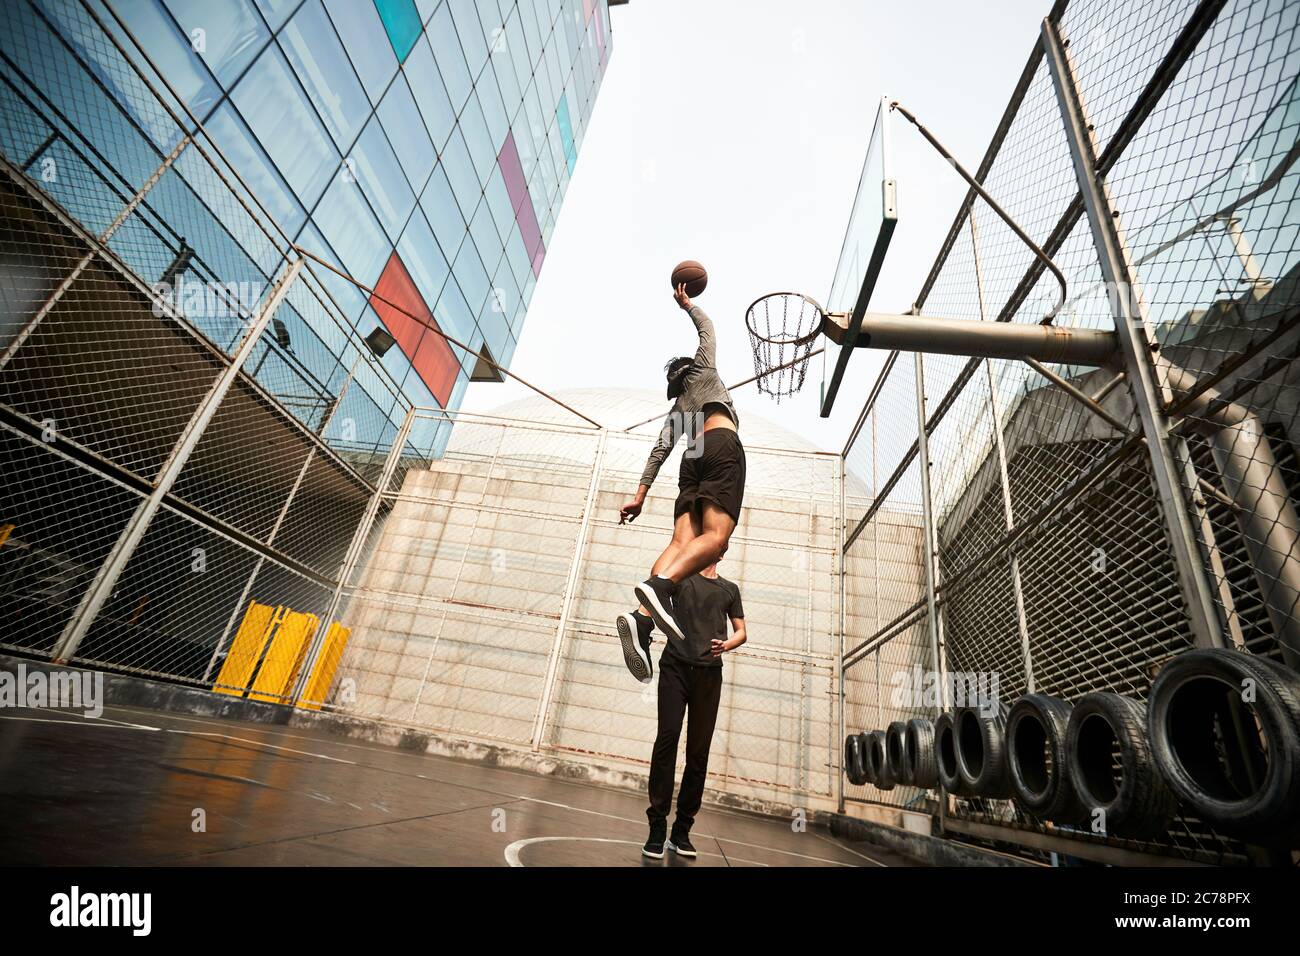 un jeune joueur asiatique de basket-ball dunking le ballon sur un terrain extérieur Banque D'Images